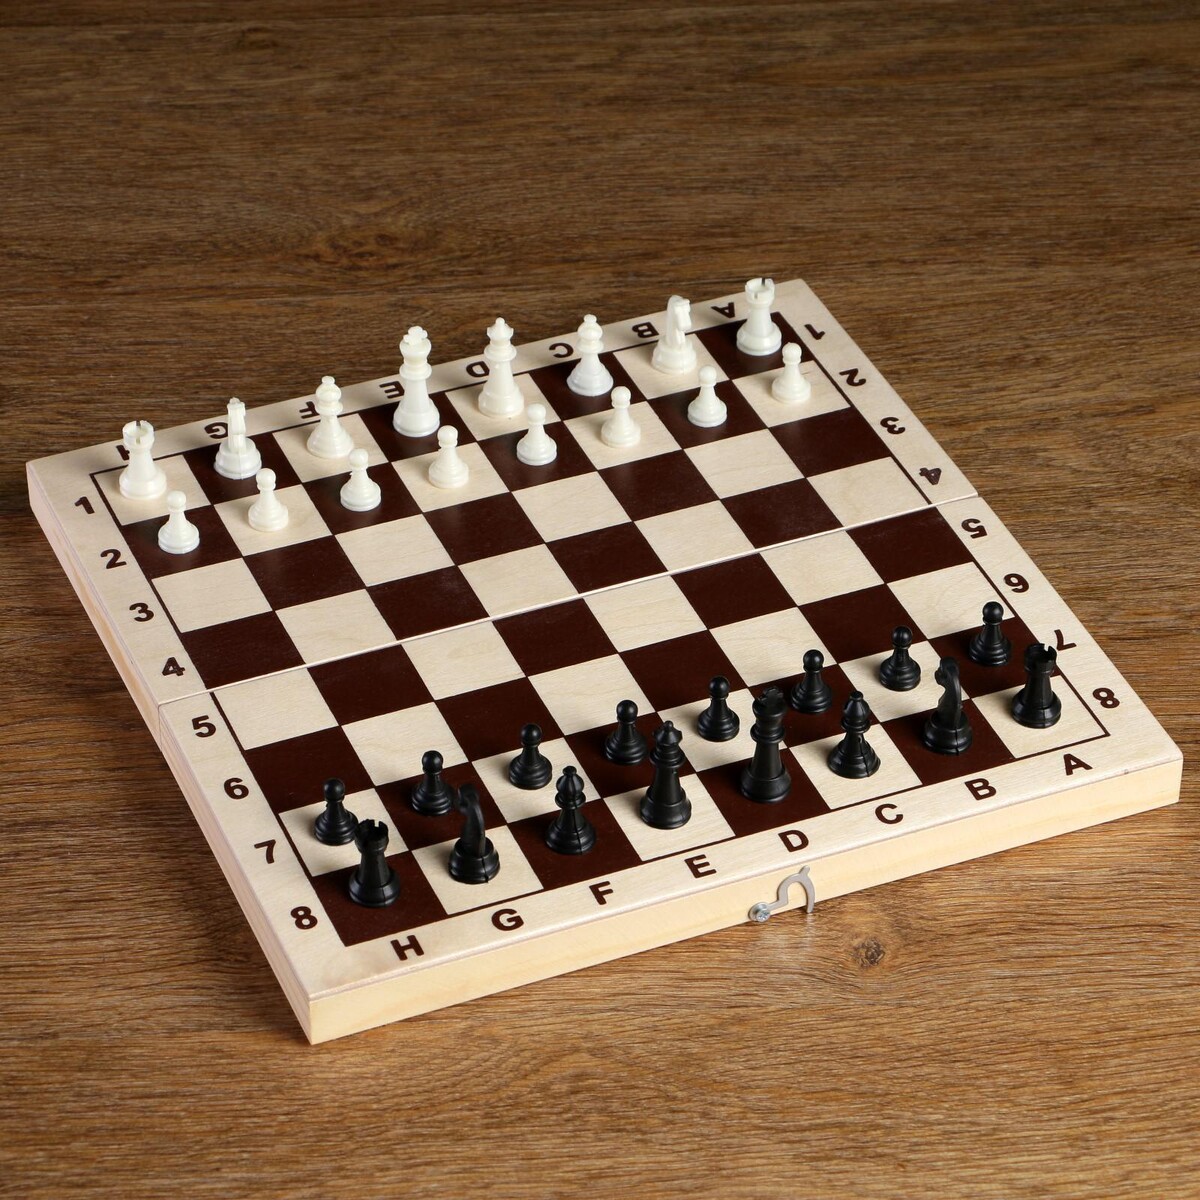 Шахматные фигуры, пластик, король h-4.2 см, пешка h-2 см александр l карагеоргиевич православный король югославии